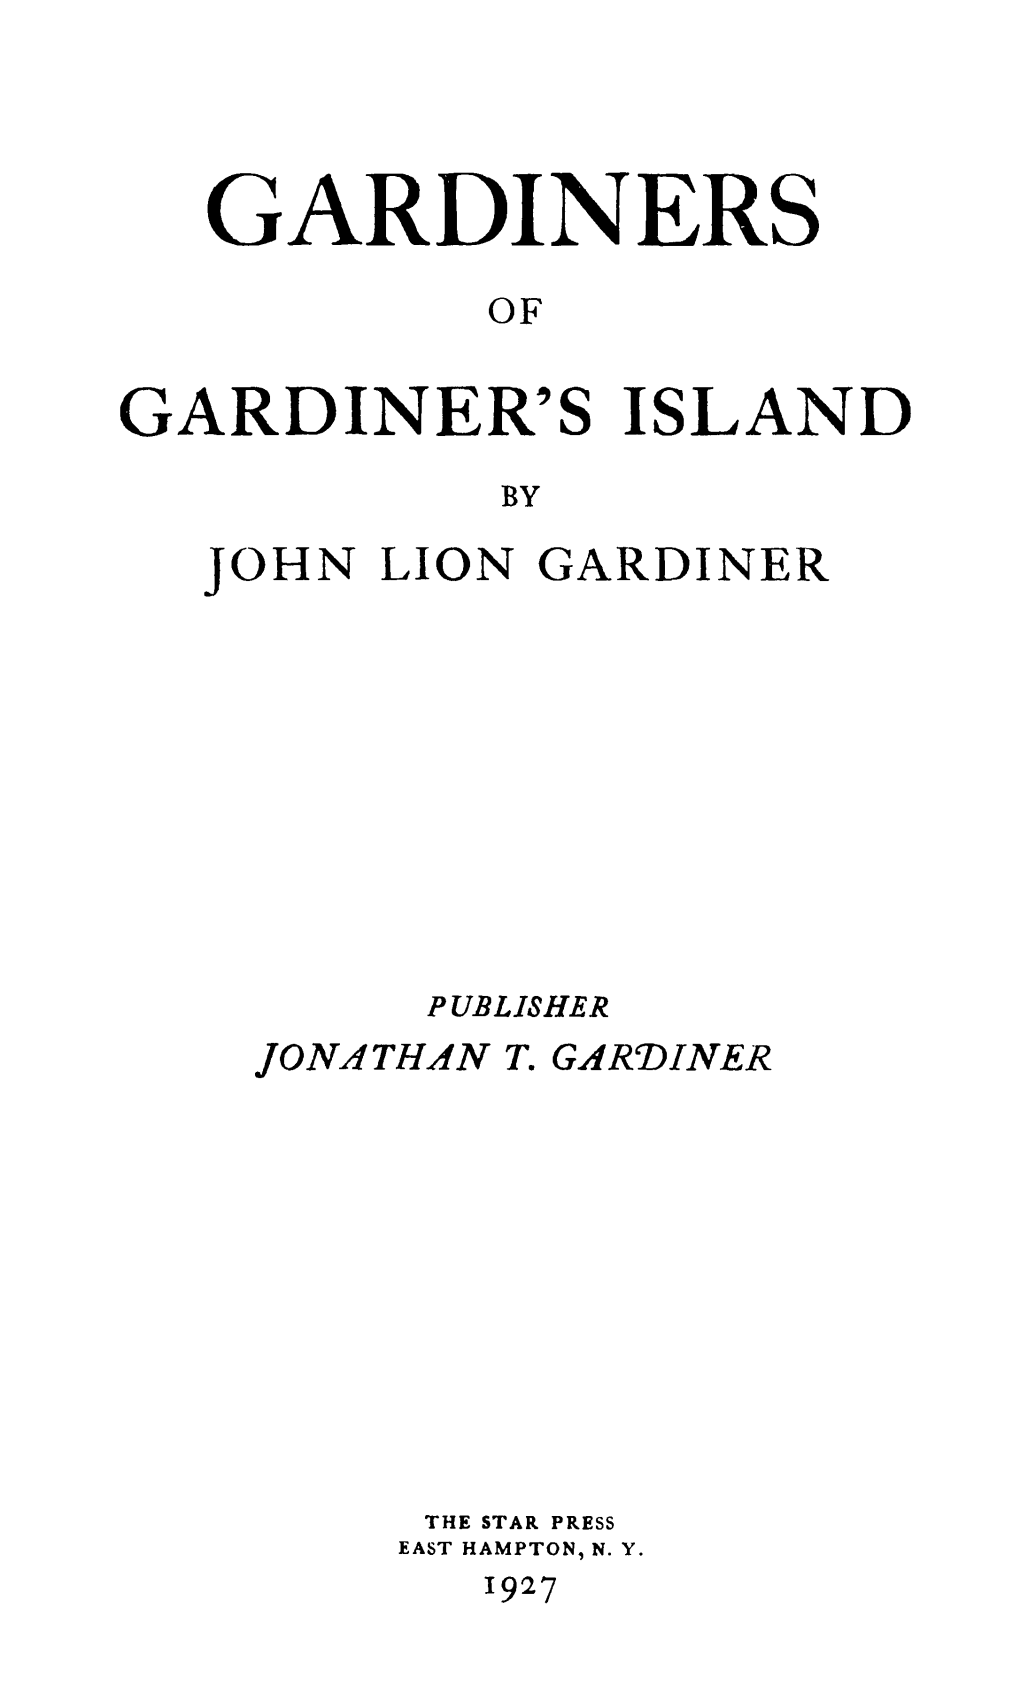 Gardiners of Gardiner's Island